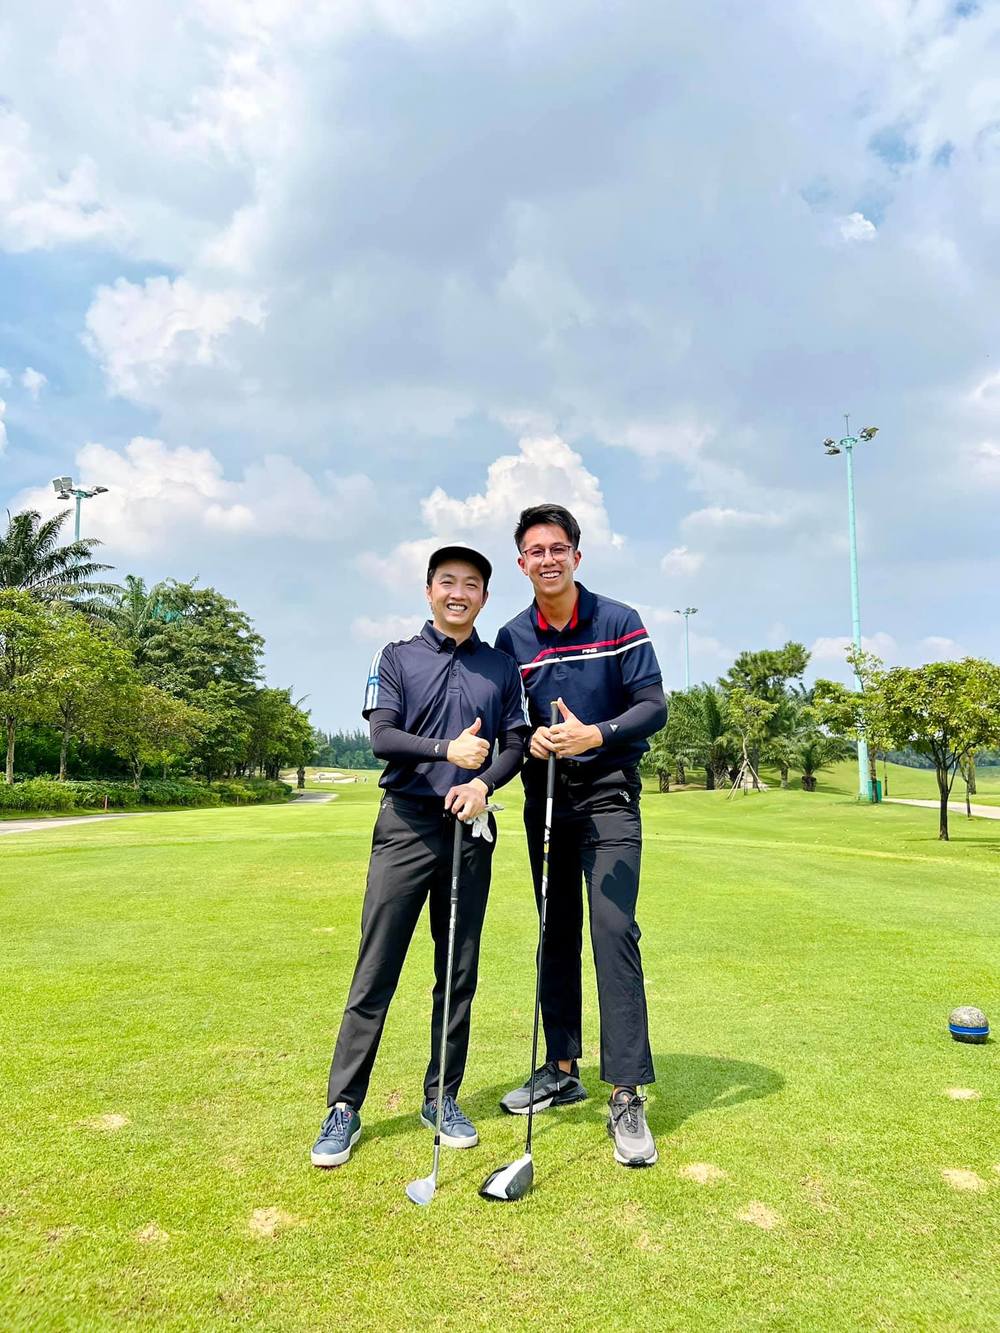 Cả Vbiz chăm chỉ chơi golf: Hiền Hồ liên tục check-in sang chảnh, Hương Giang và hội Hoa hậu lên đồ biến sân tập thành sàn diễn - Ảnh 6.